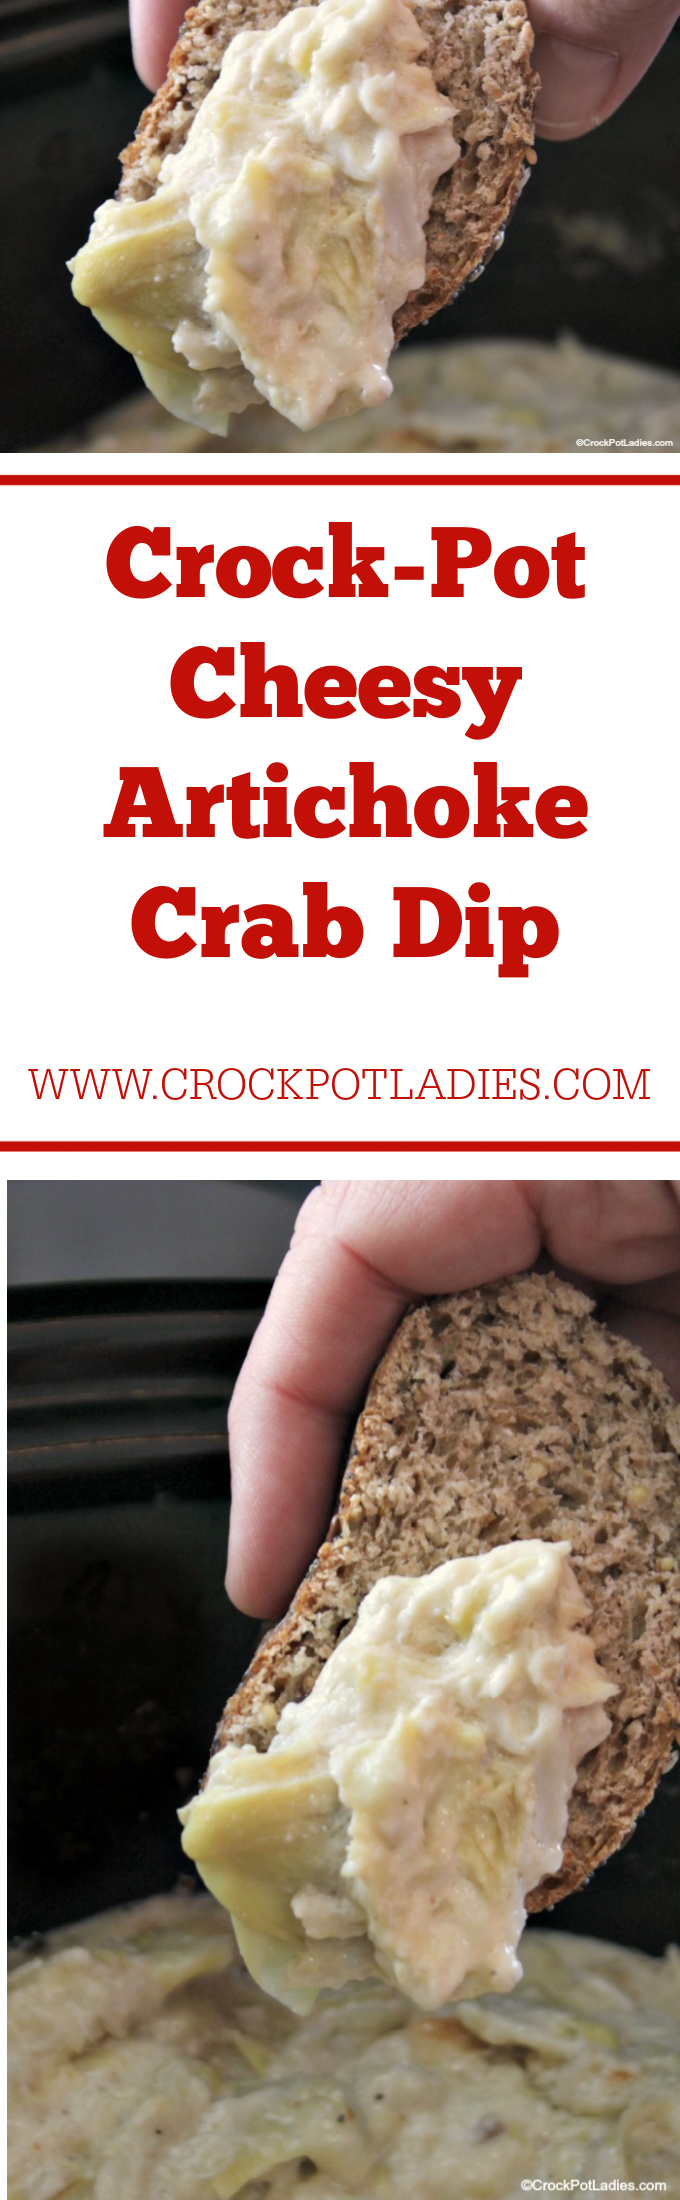 Crock-Pot Cheesy Artichoke Crab Dip